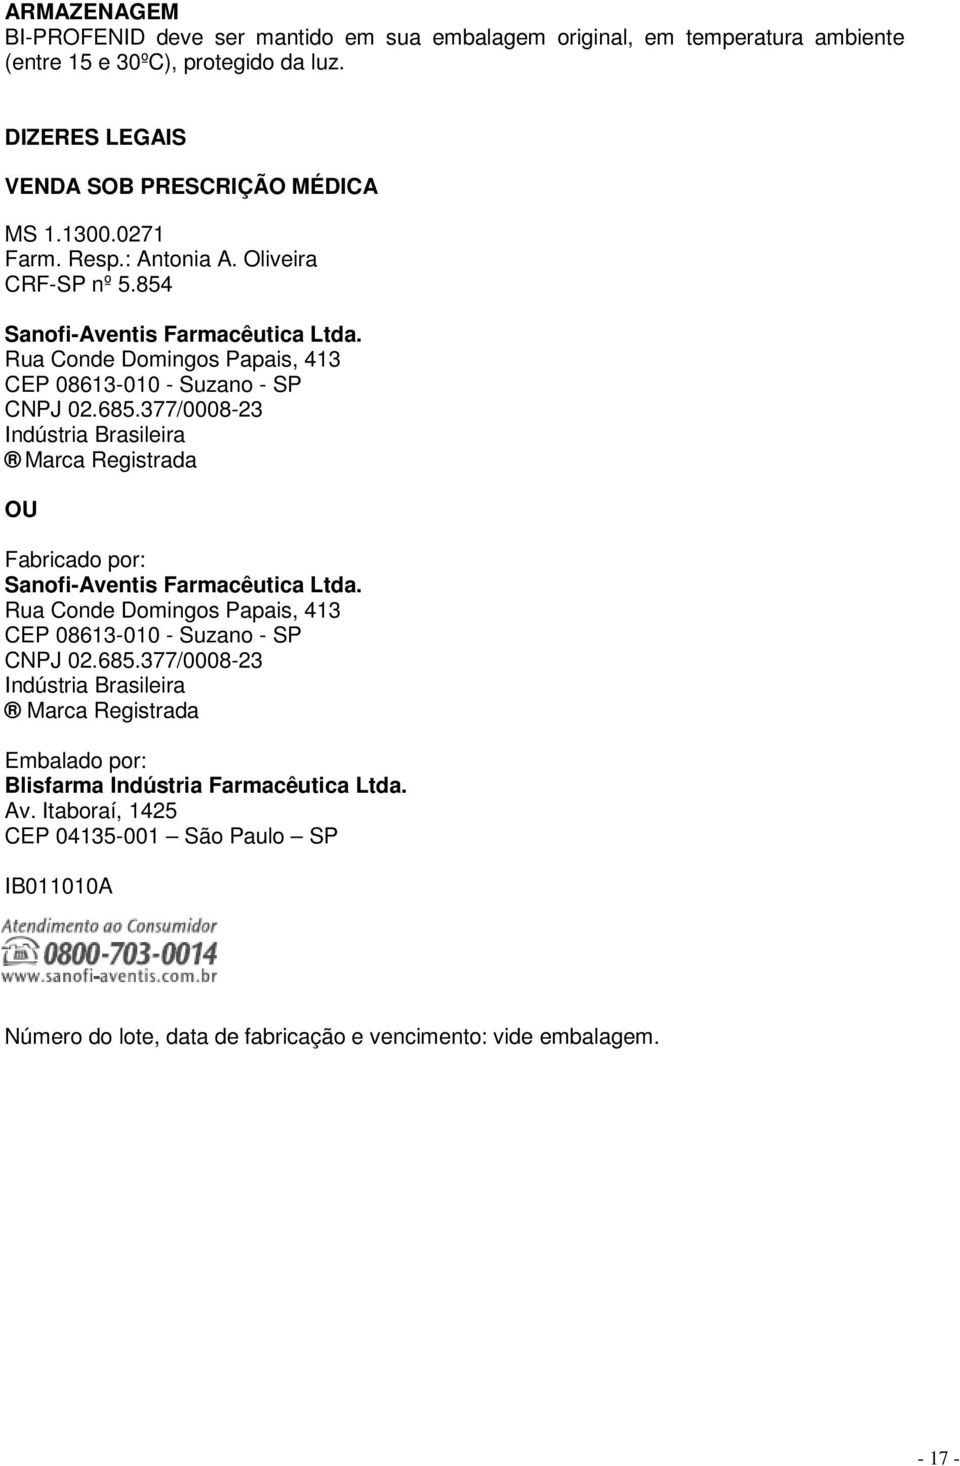 377/0008-23 Indústria Brasileira Marca Registrada OU Fabricado por: Sanofi-Aventis Farmacêutica Ltda. Rua Conde Domingos Papais, 413 CEP 08613-010 - Suzano - SP CNPJ 02.685.